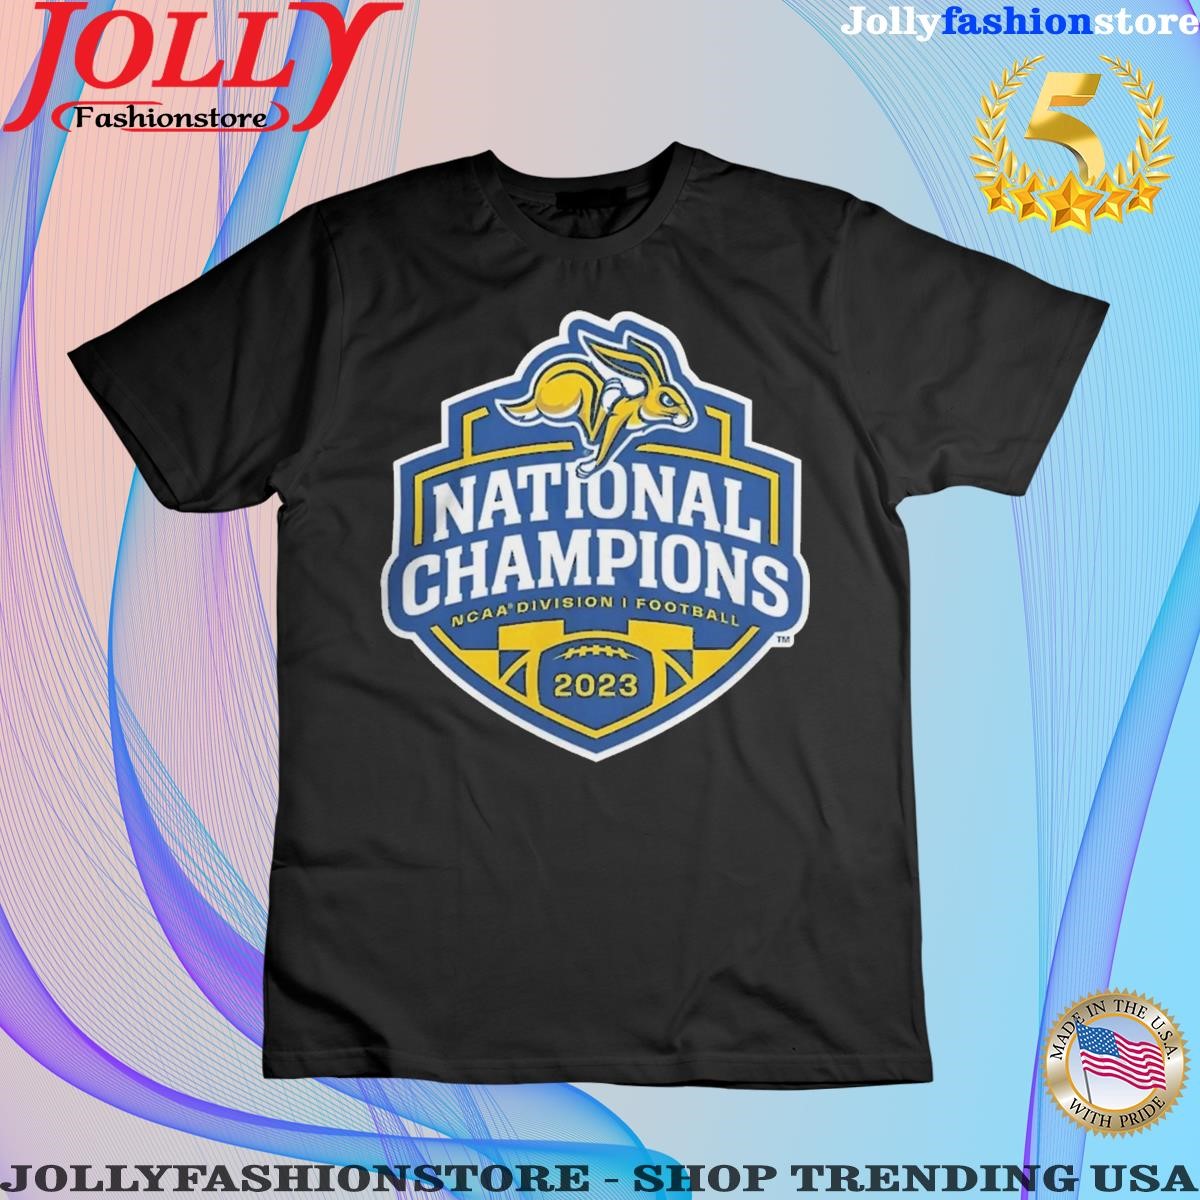 South Dakota State Jackrabbits 2023 National Champions T-Shirts ...